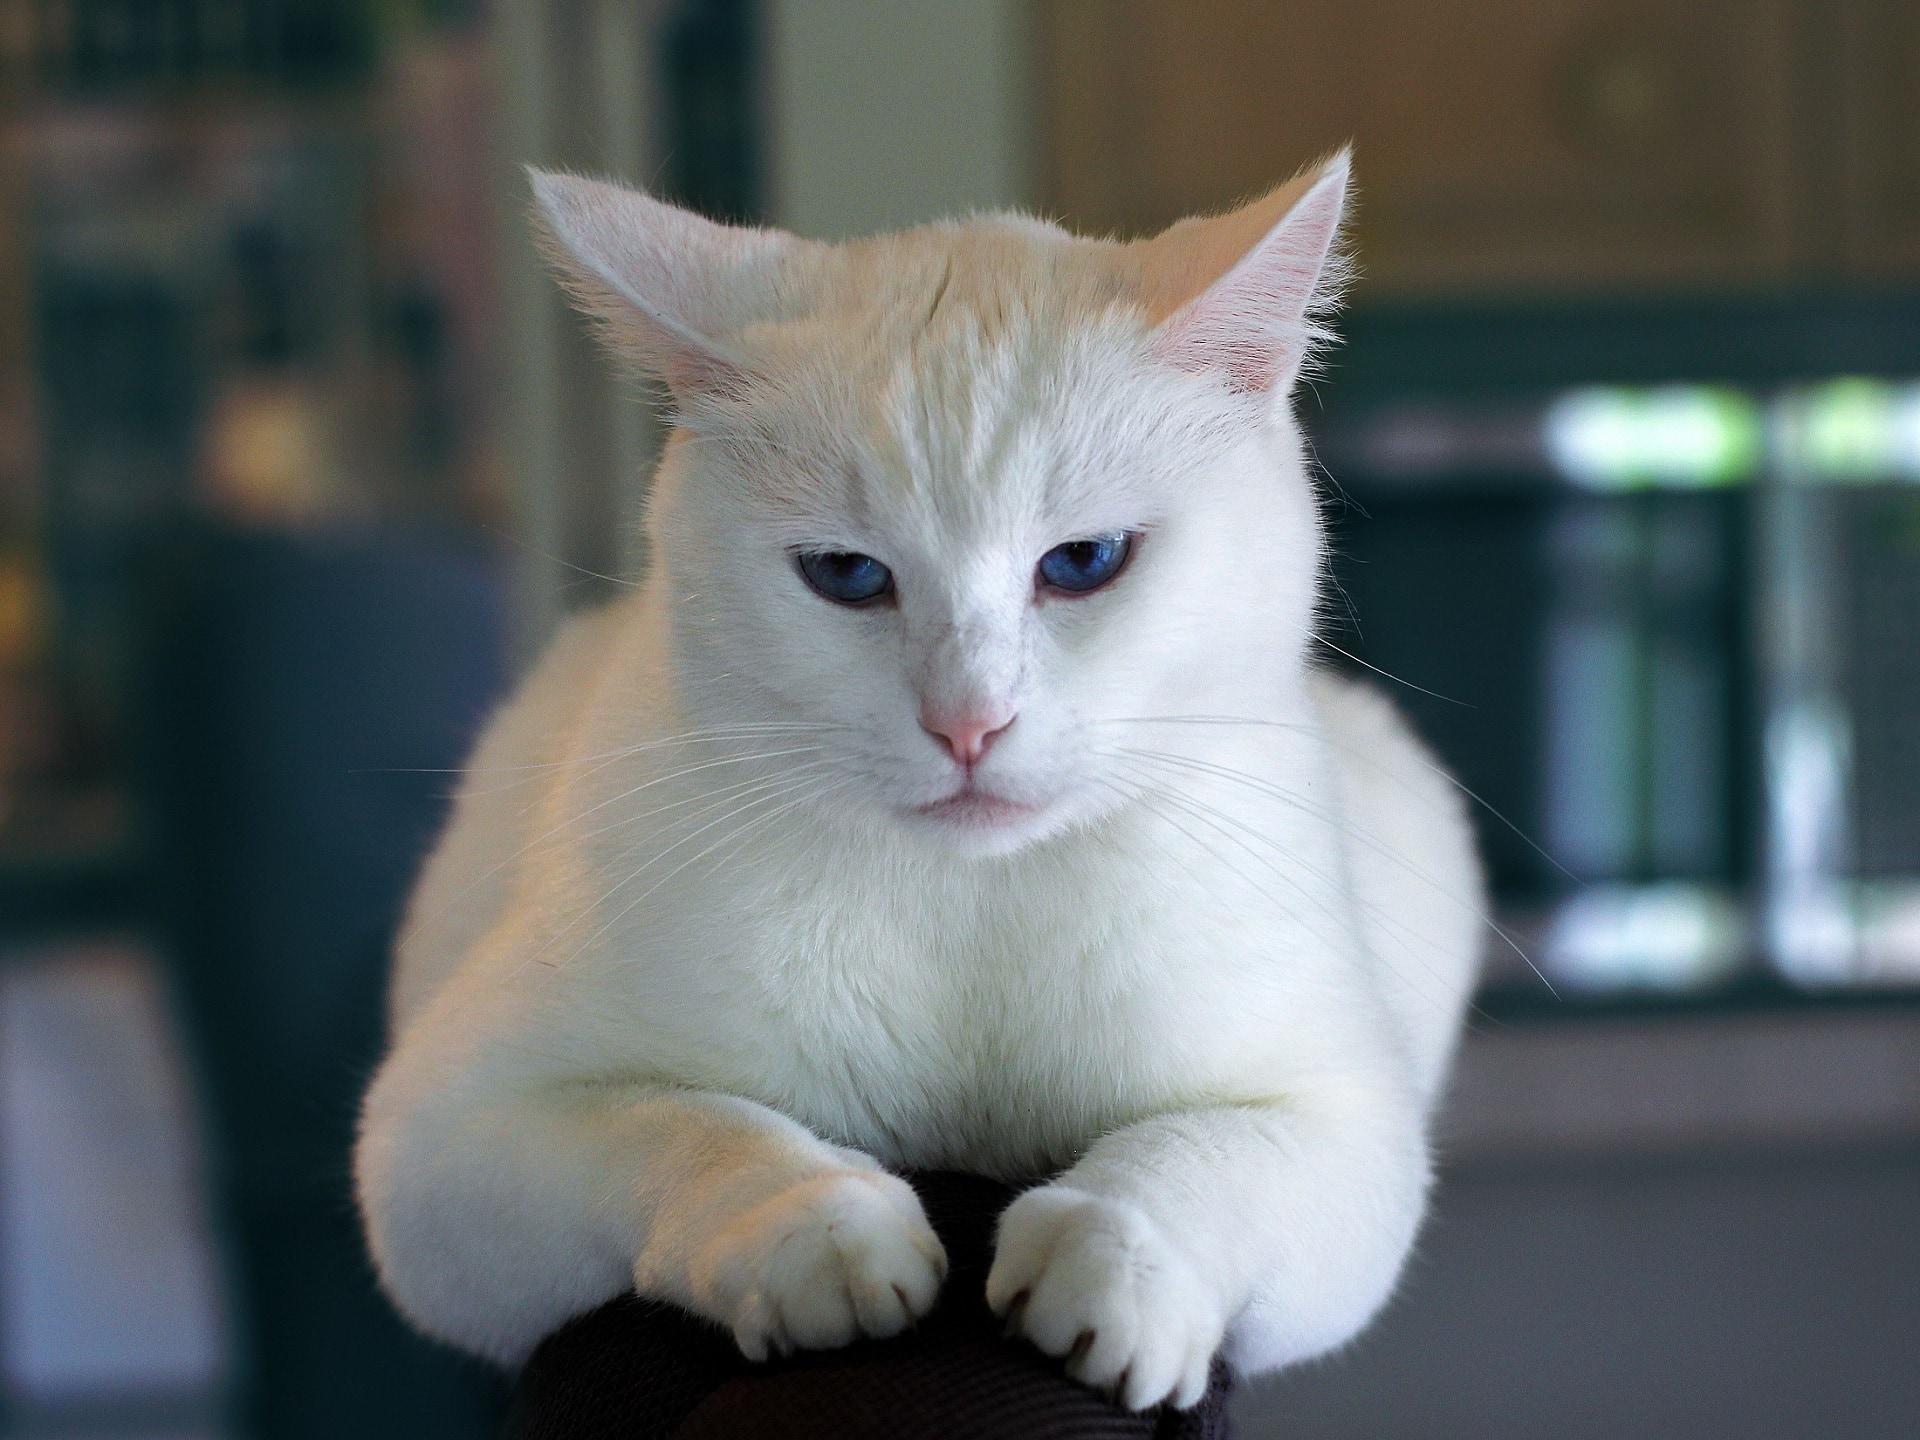 Portrait of white cat in kitchen